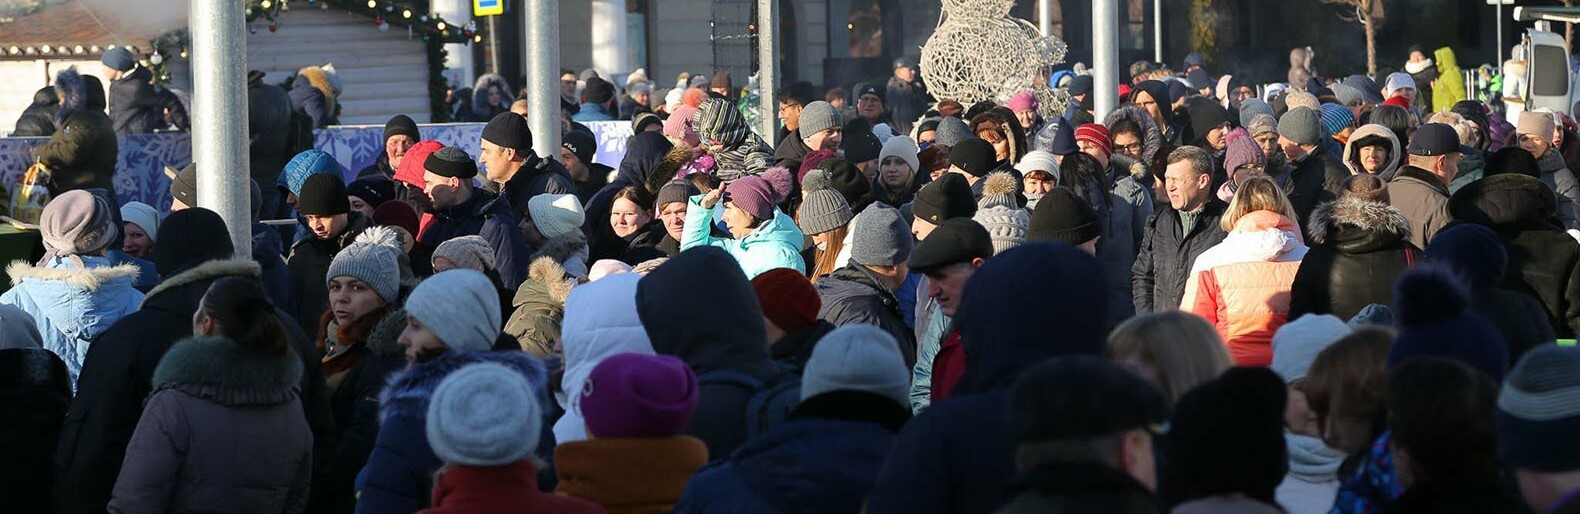 В Белгороде 14 января перекроют движение из-за фестиваля вареников